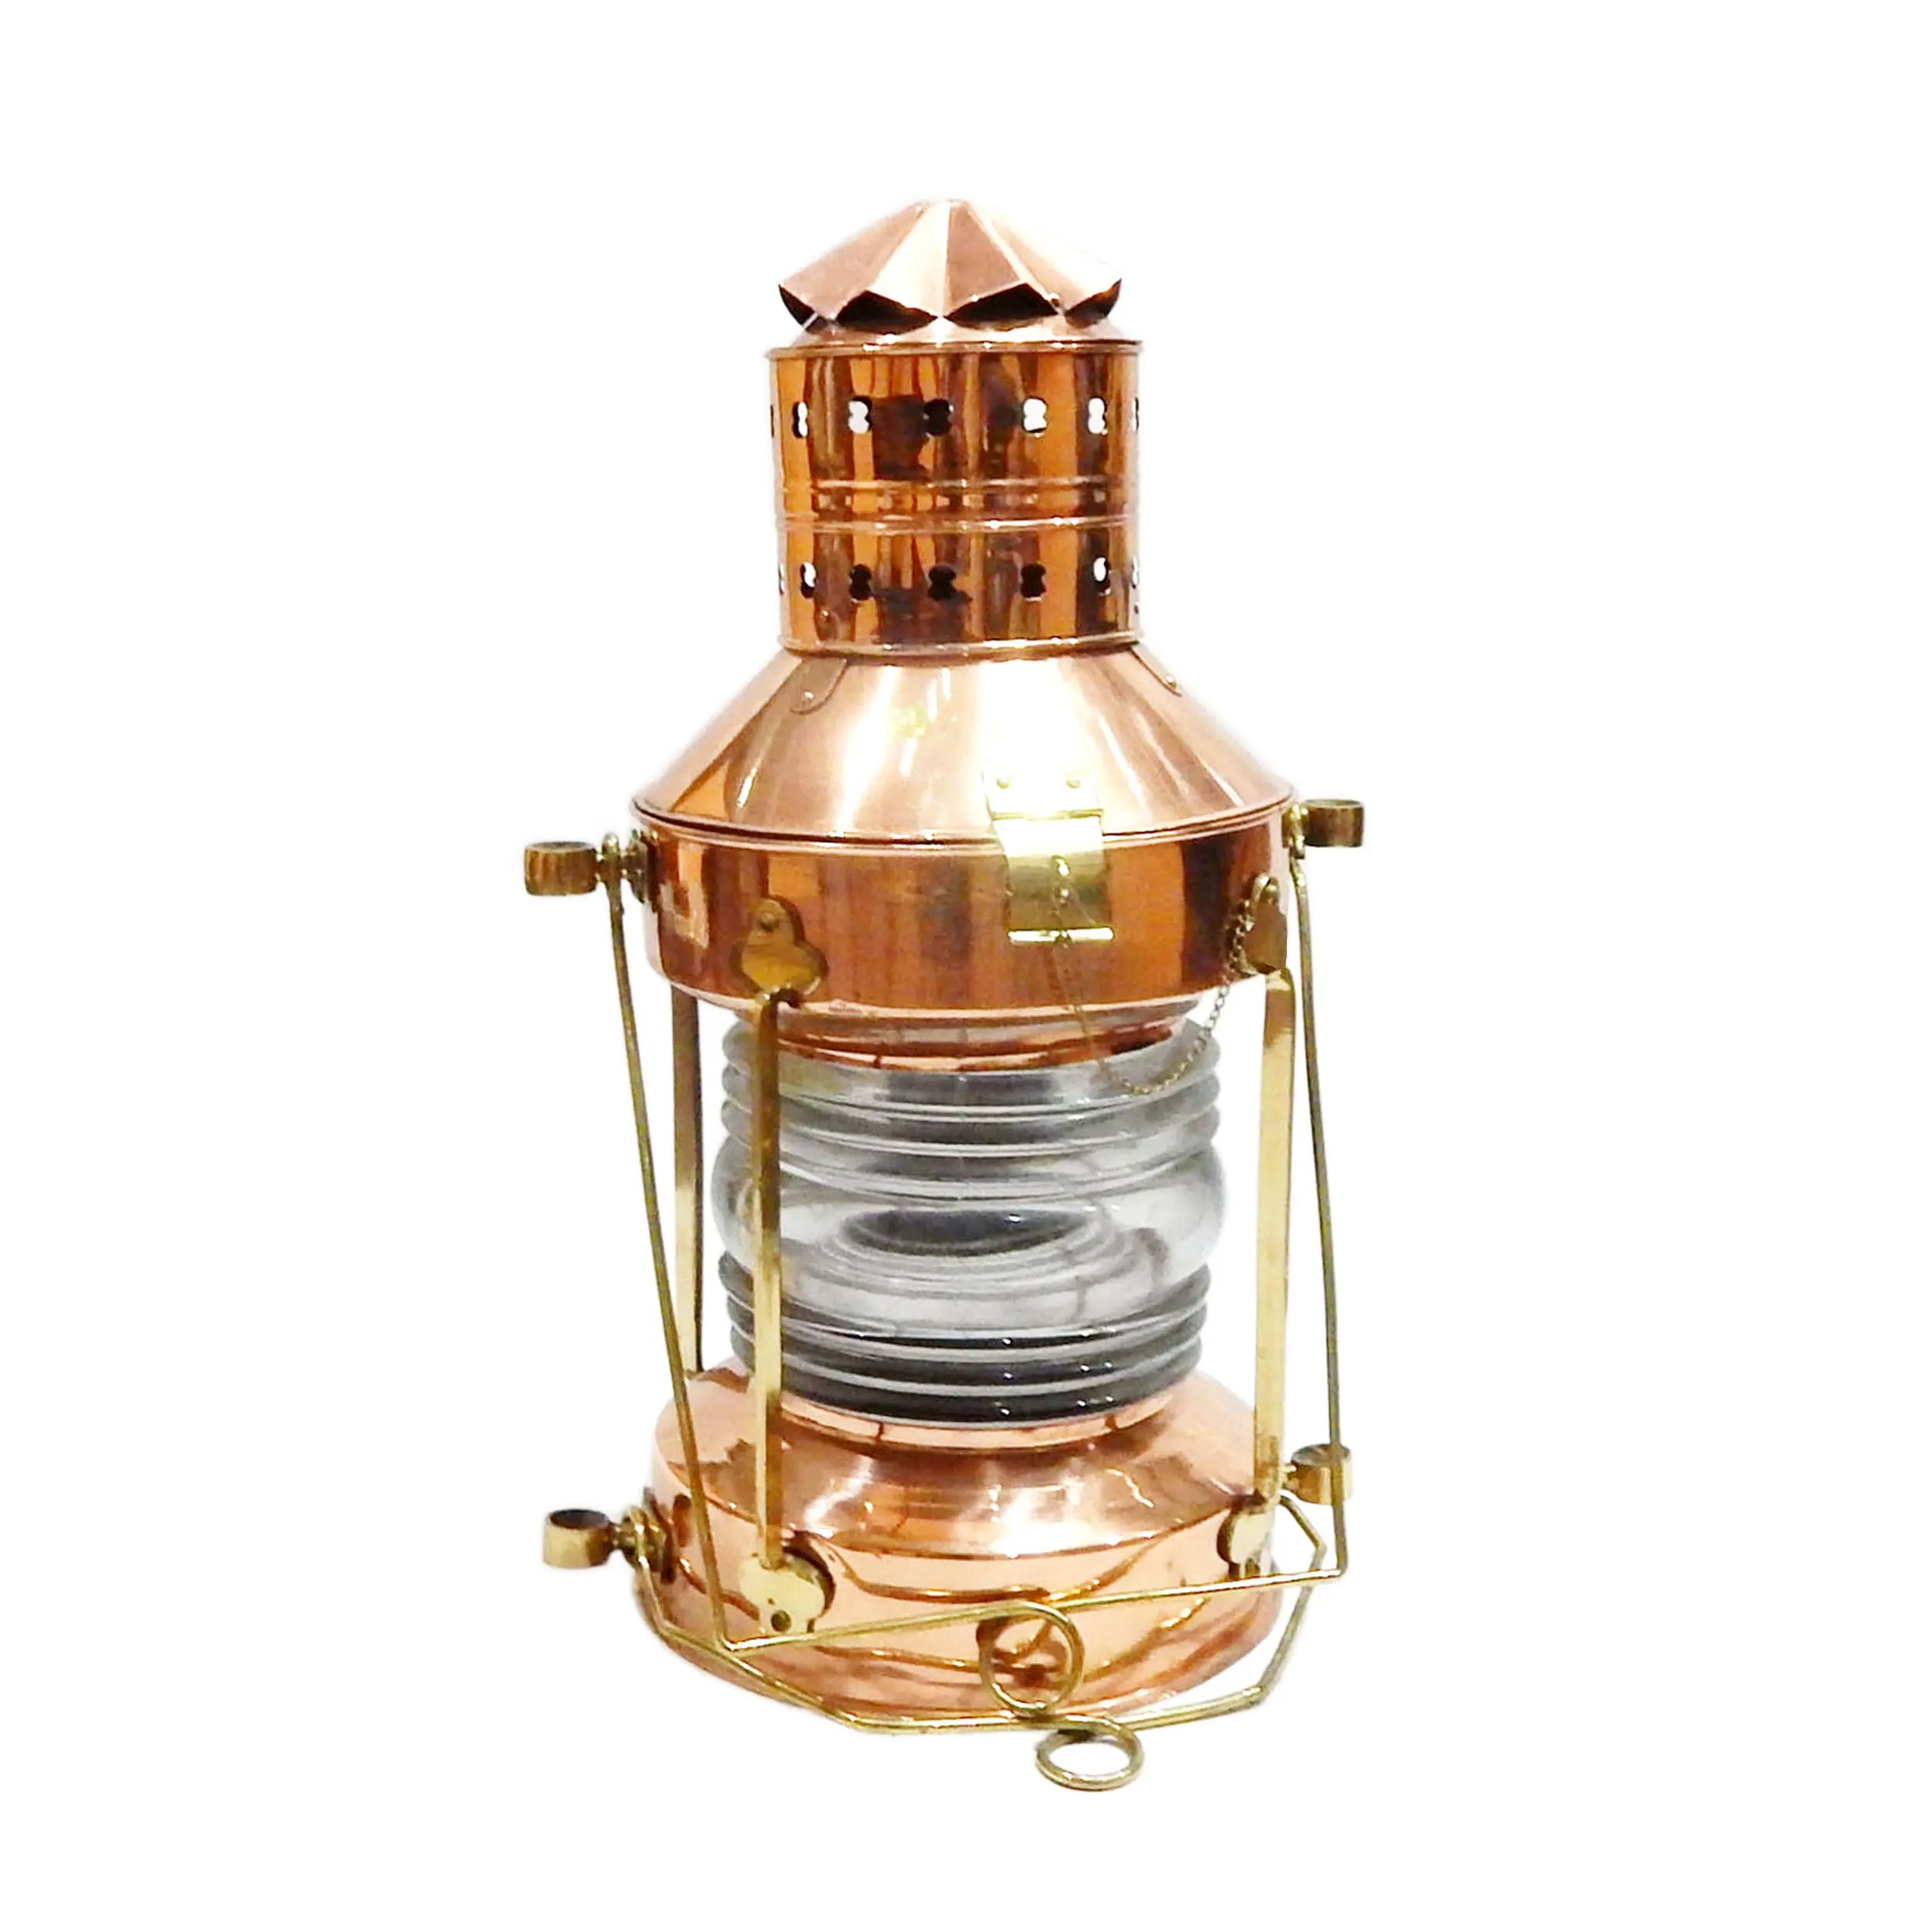 Deniz gemi bakır çapa lamba fener klasik antika gaz lambası dekoratif lamba düğün fener